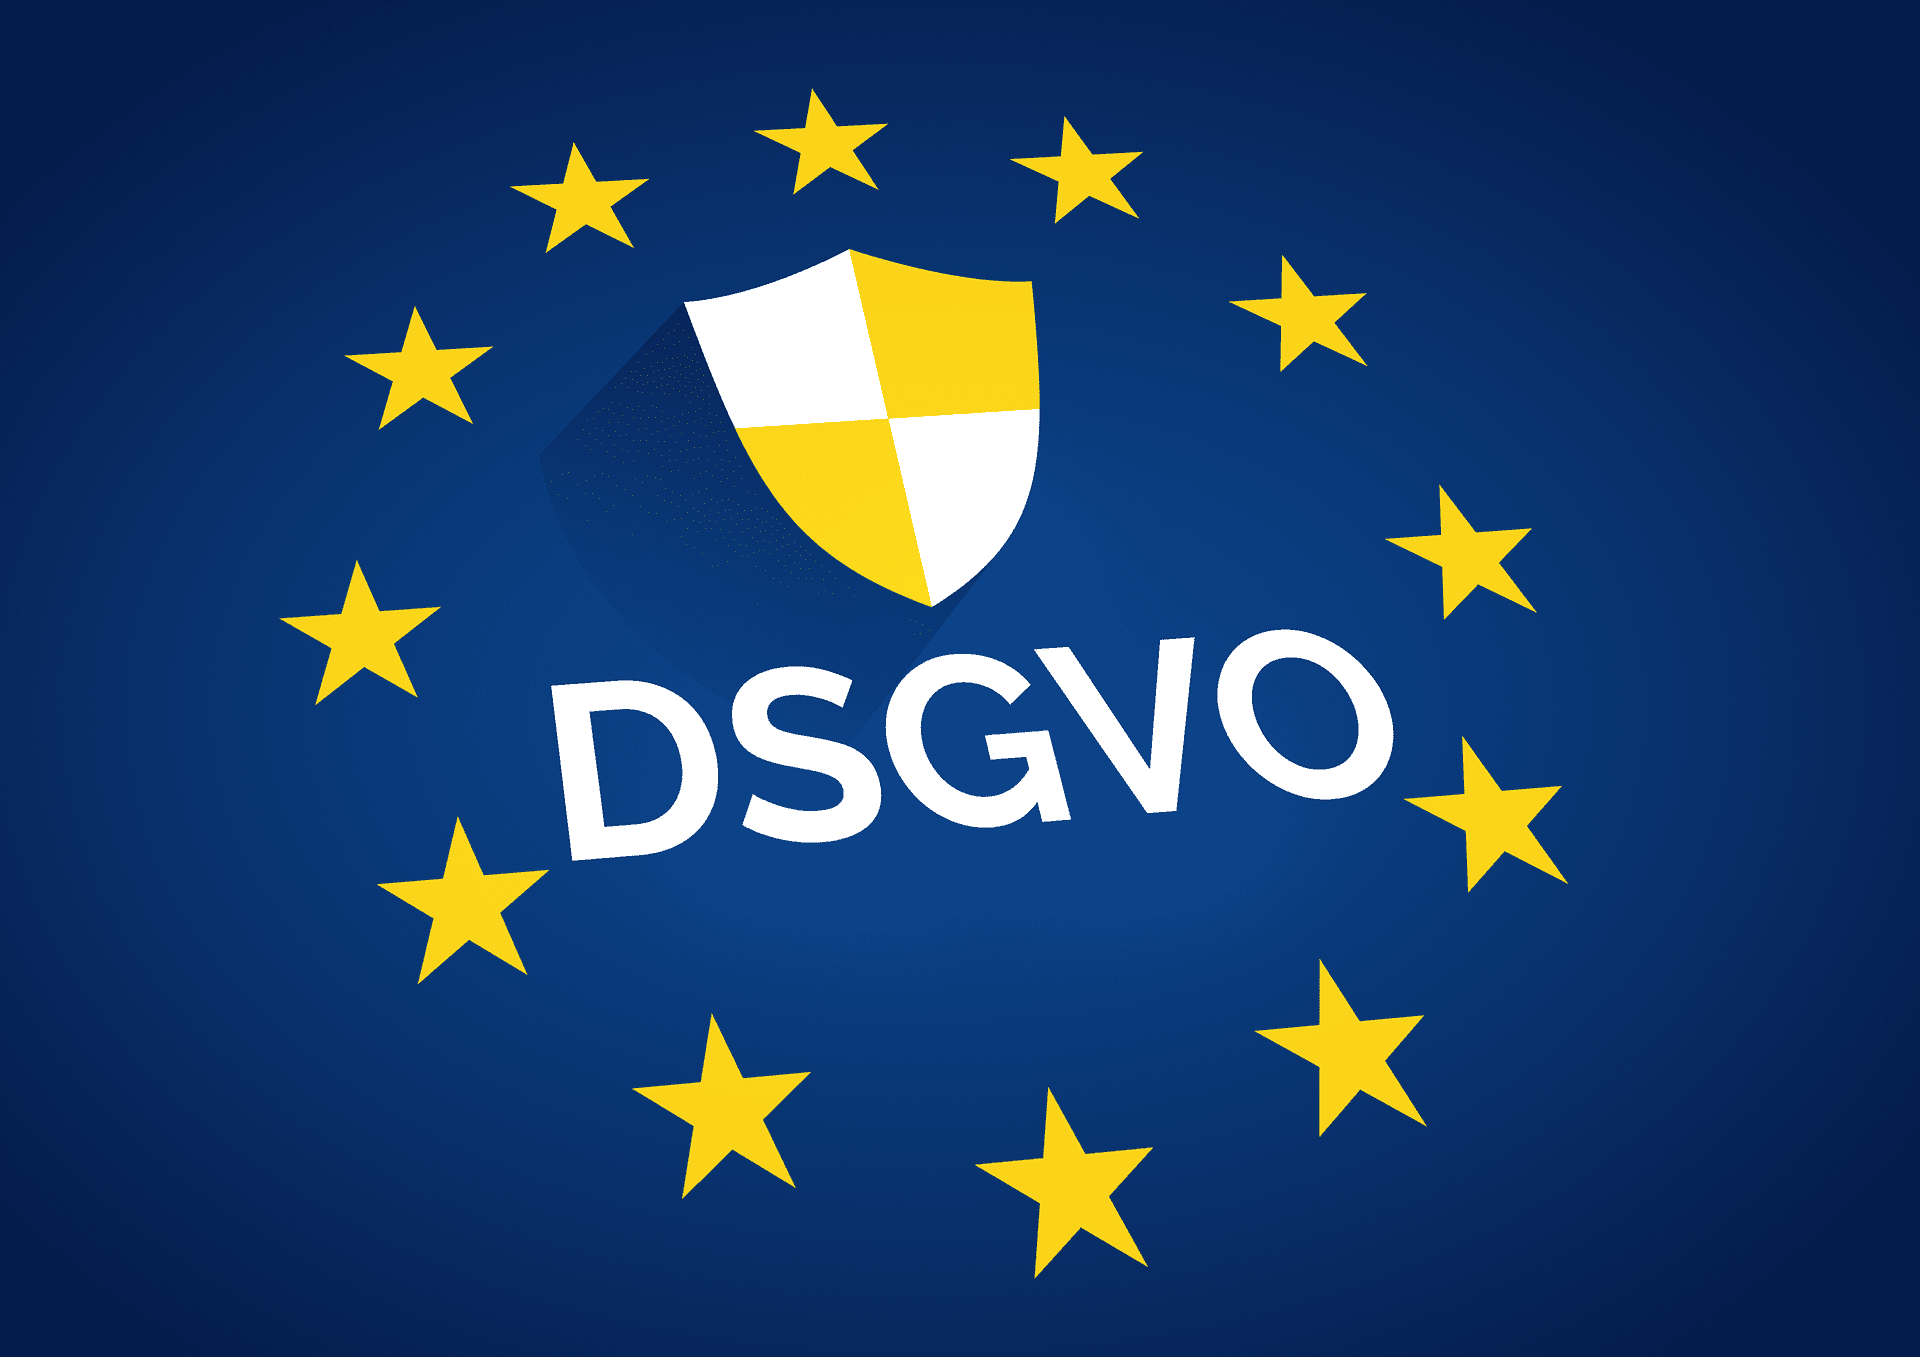 DSGVO - Datenschutz Grundverordnung